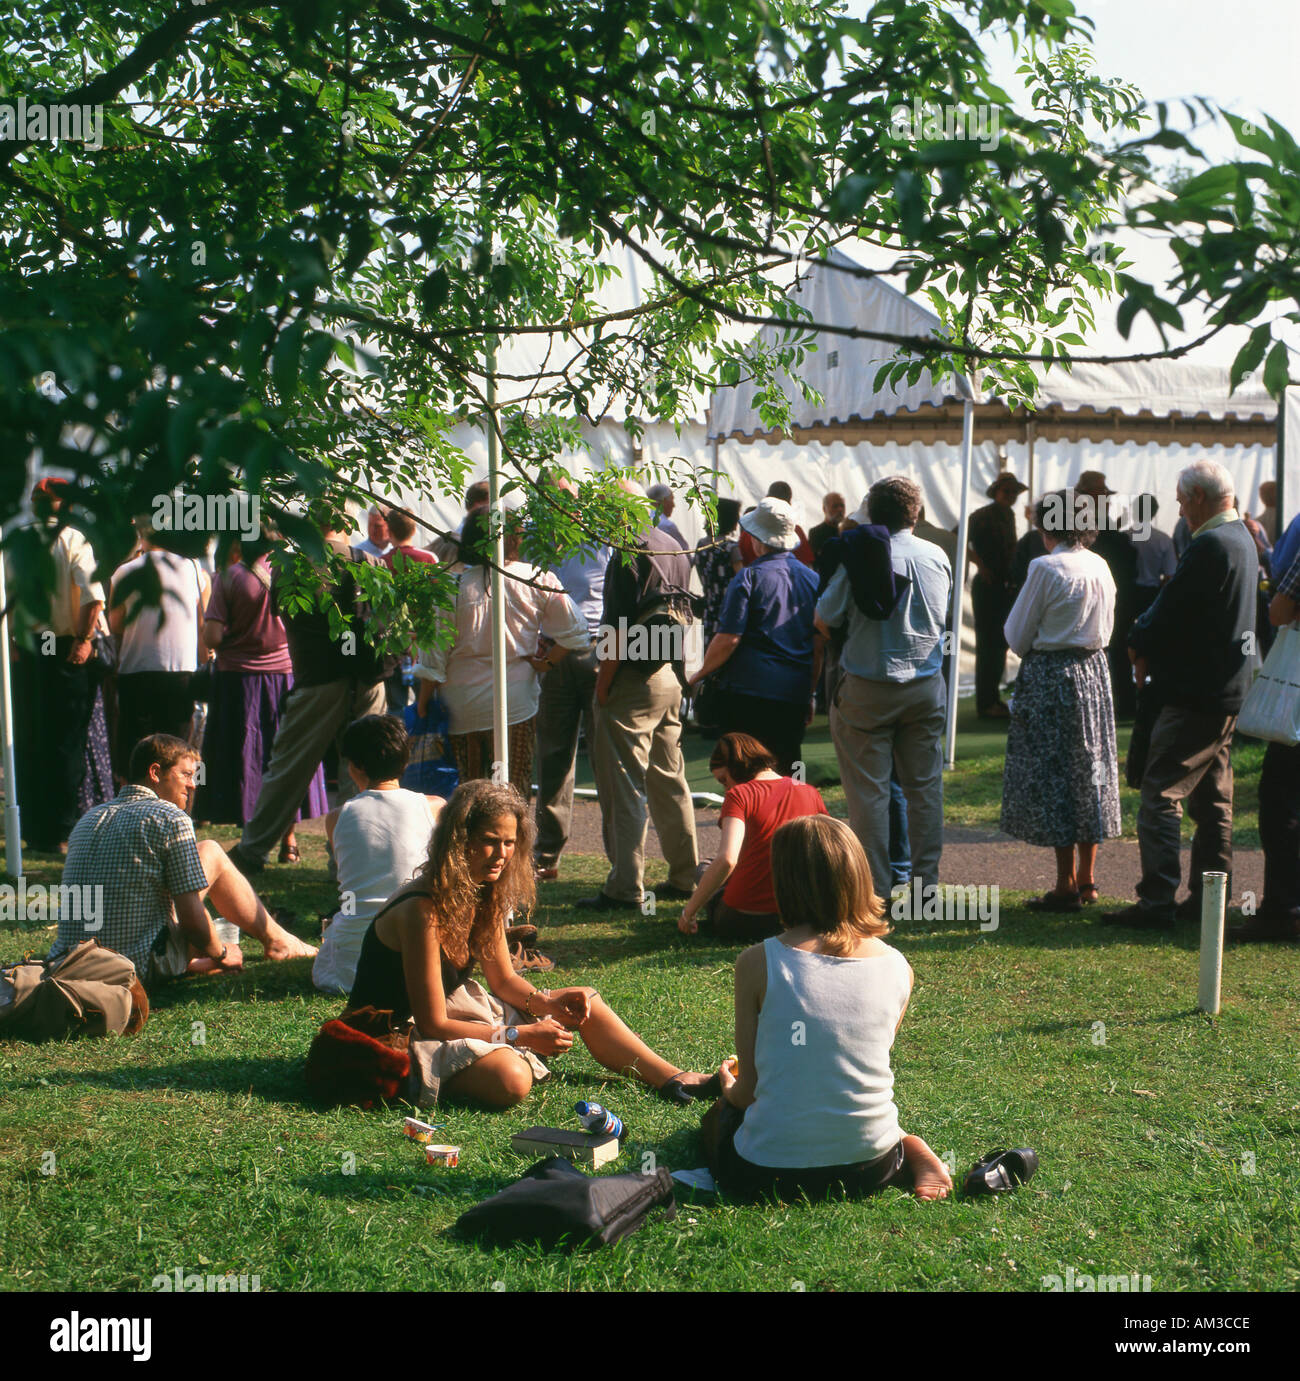 Les gens font la queue pour événements et assis sur la pelouse à l'Hay Festival, Hay-on-Wye, Powys Pays de Galles UK Banque D'Images